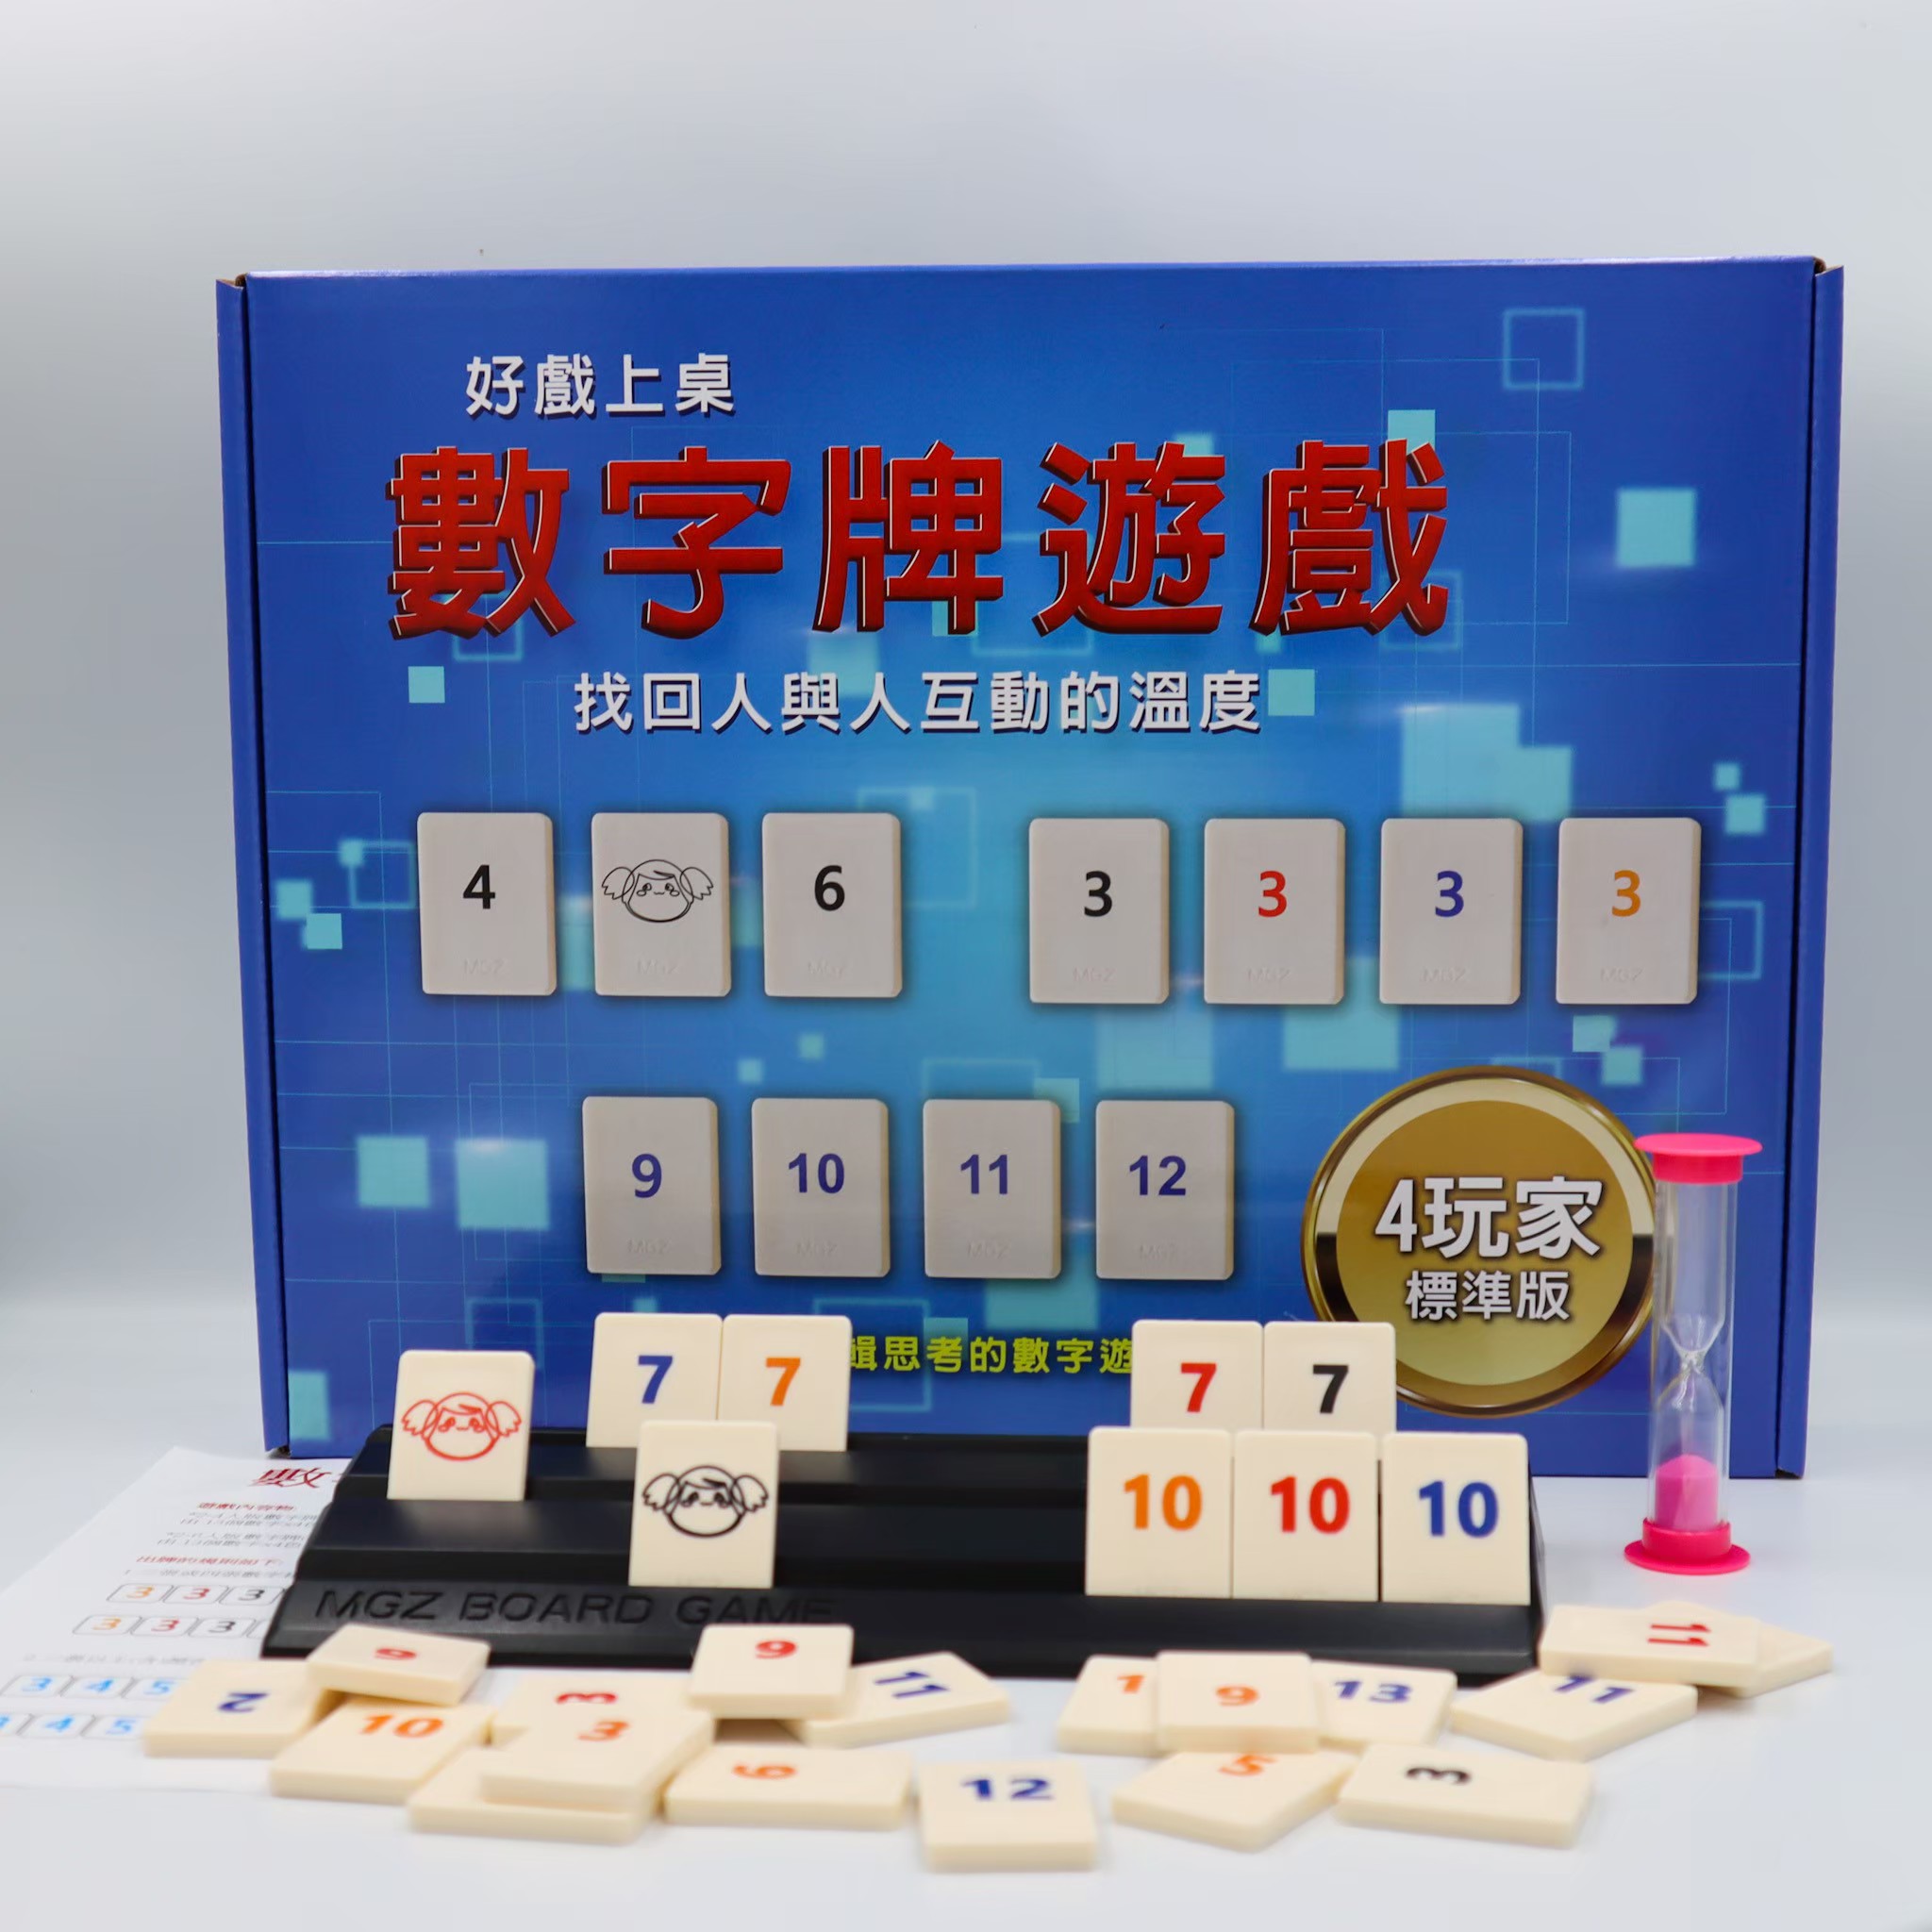 【漫格子】數字遊戲標準盒裝版 4人版 6人版 送沙漏 繁體中文說明書